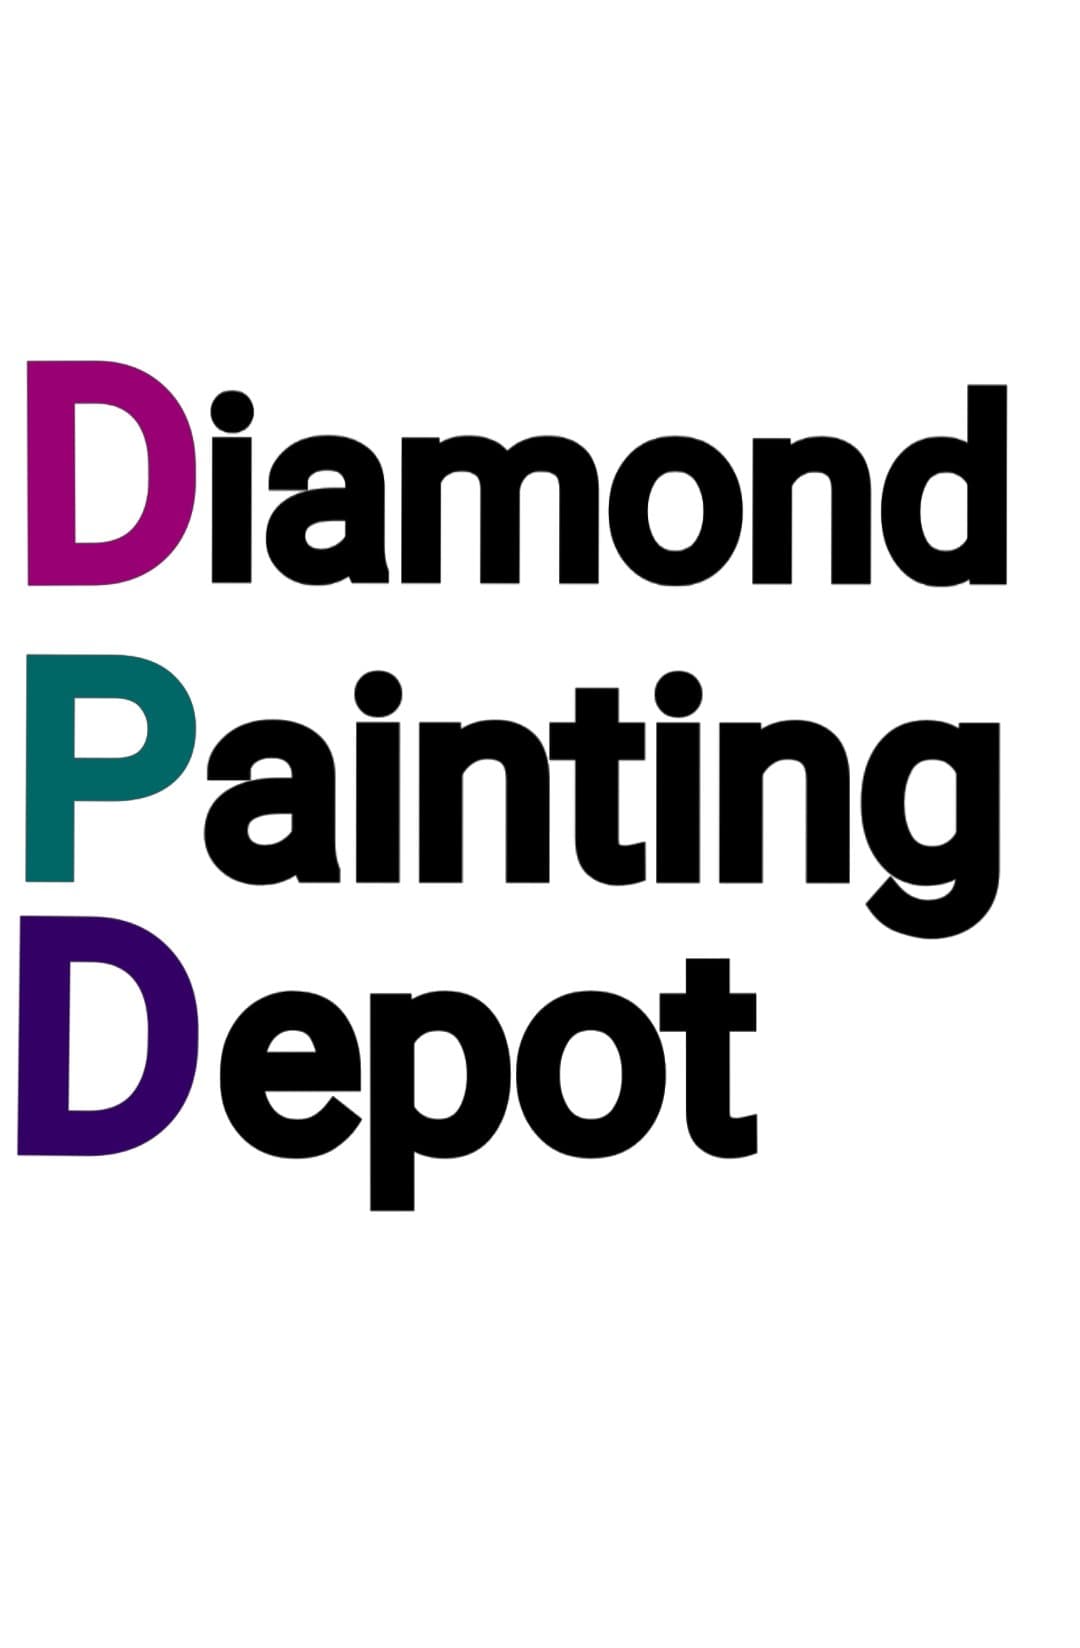 My diamond painting work space : r/diamondpainting